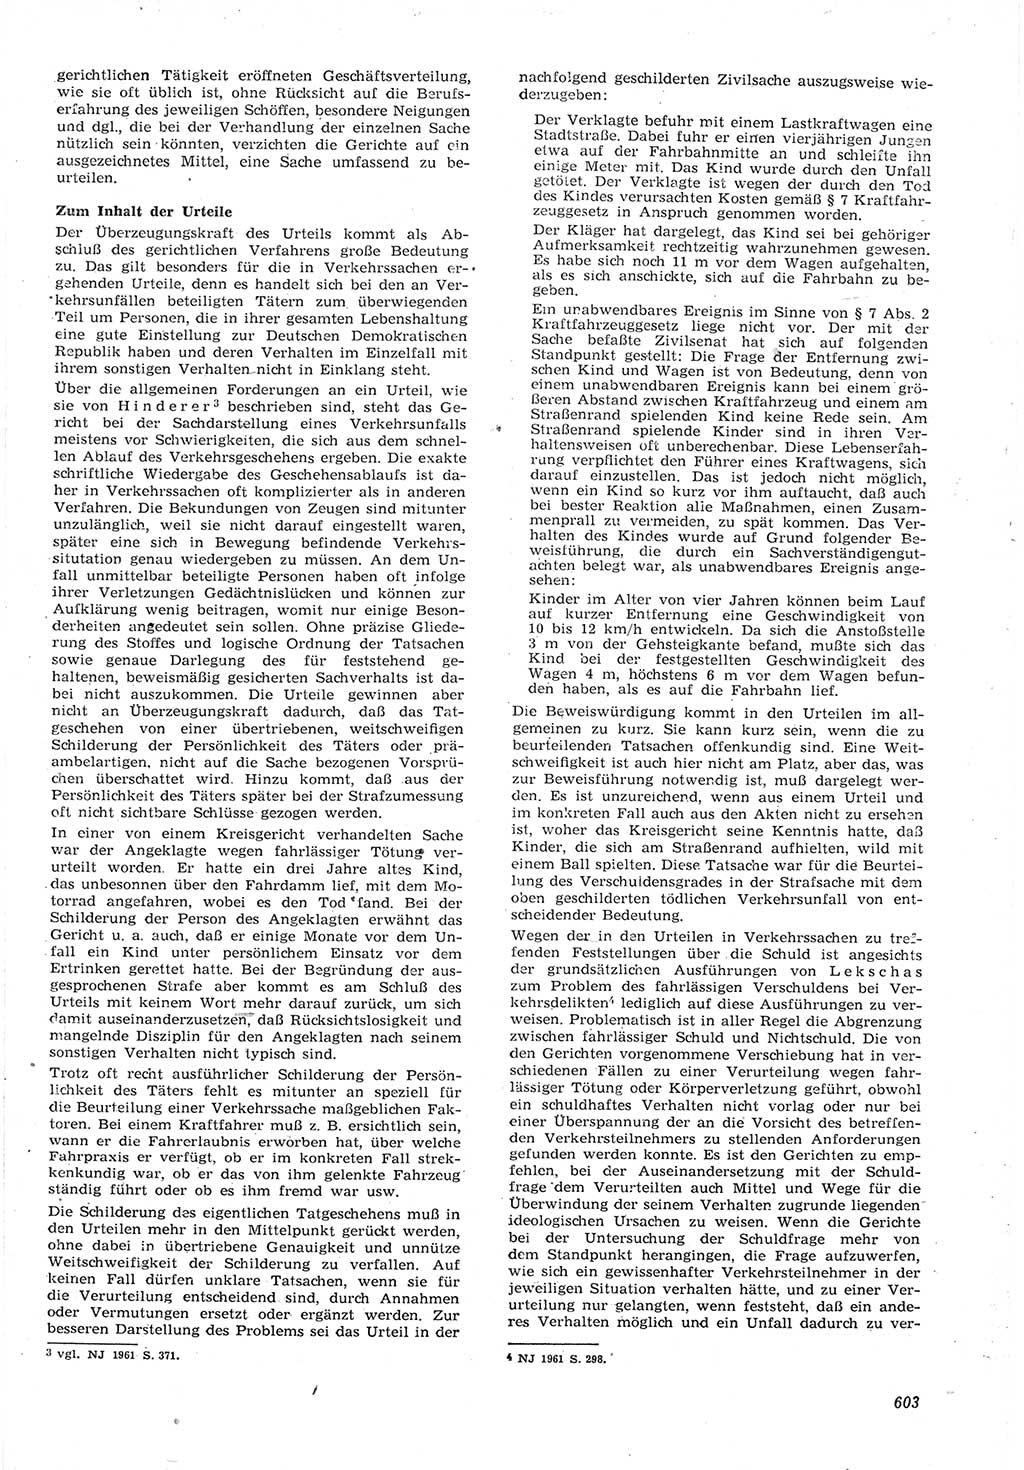 Neue Justiz (NJ), Zeitschrift für Recht und Rechtswissenschaft [Deutsche Demokratische Republik (DDR)], 15. Jahrgang 1961, Seite 603 (NJ DDR 1961, S. 603)